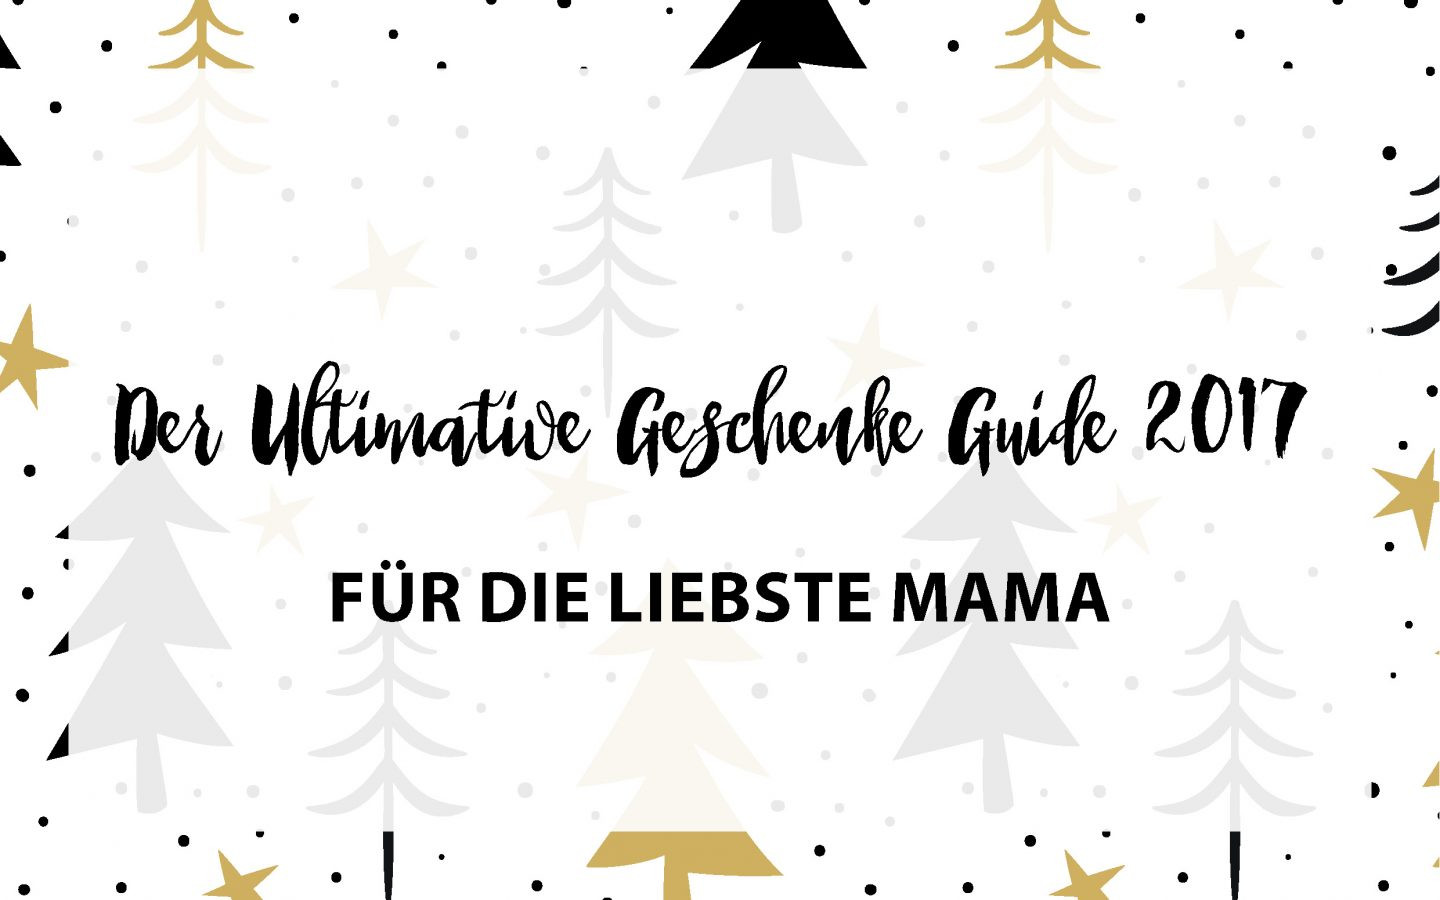 Geschenke Für Die Liebste
 Der Ultimative Geschenke Guide 2017 FÜR DIE LIEBSTE MAMA